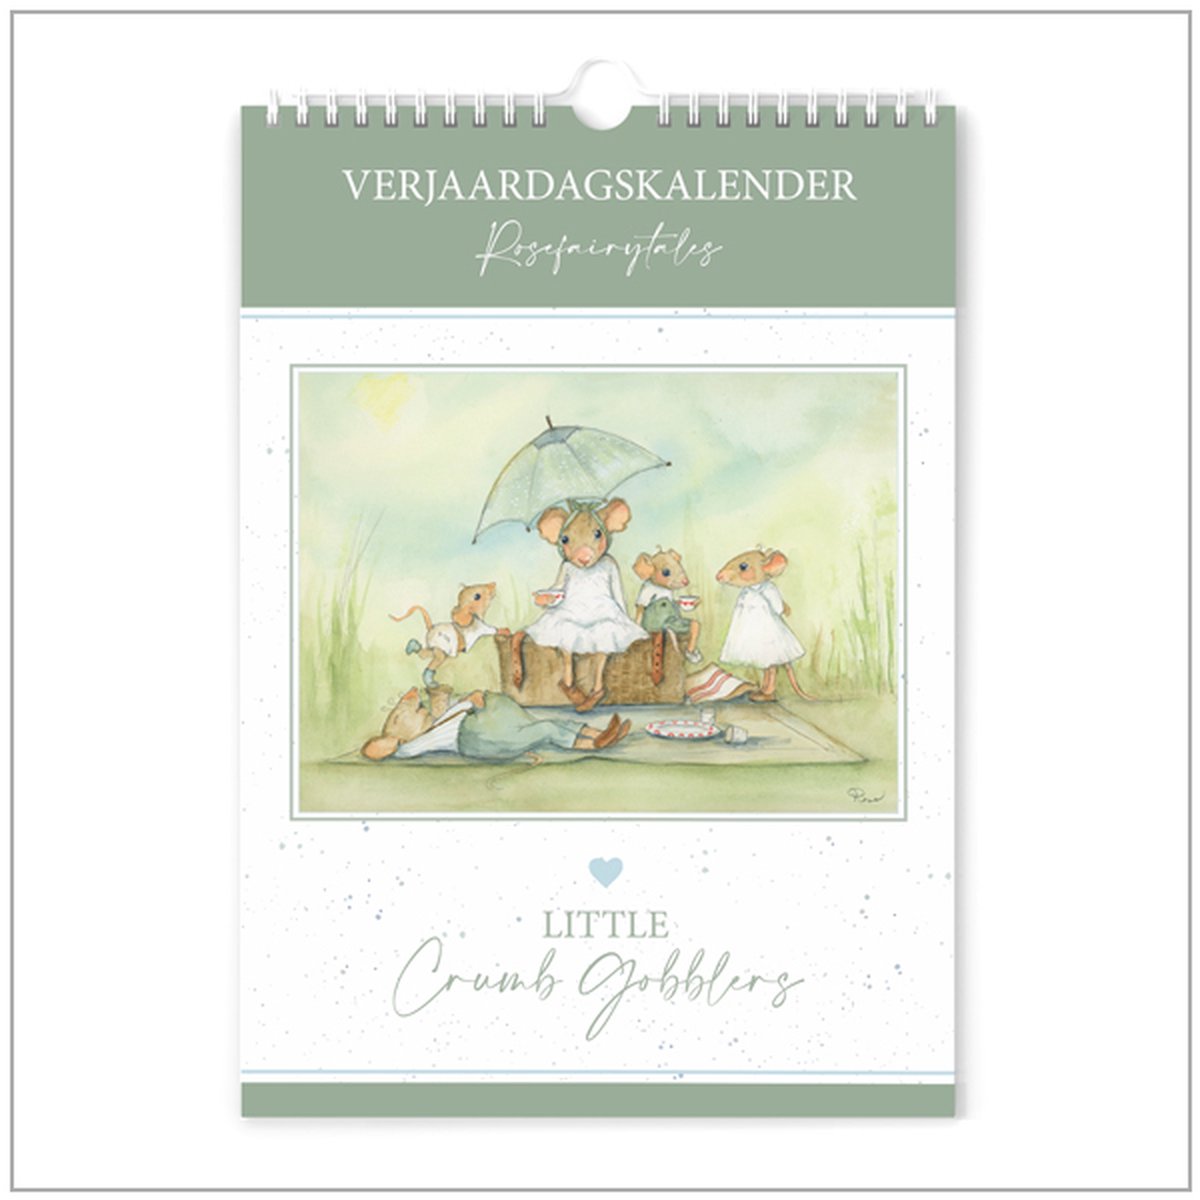 Verjaardagskalender | Little Crumb Gobblers | Wandkalender Rosefairytales